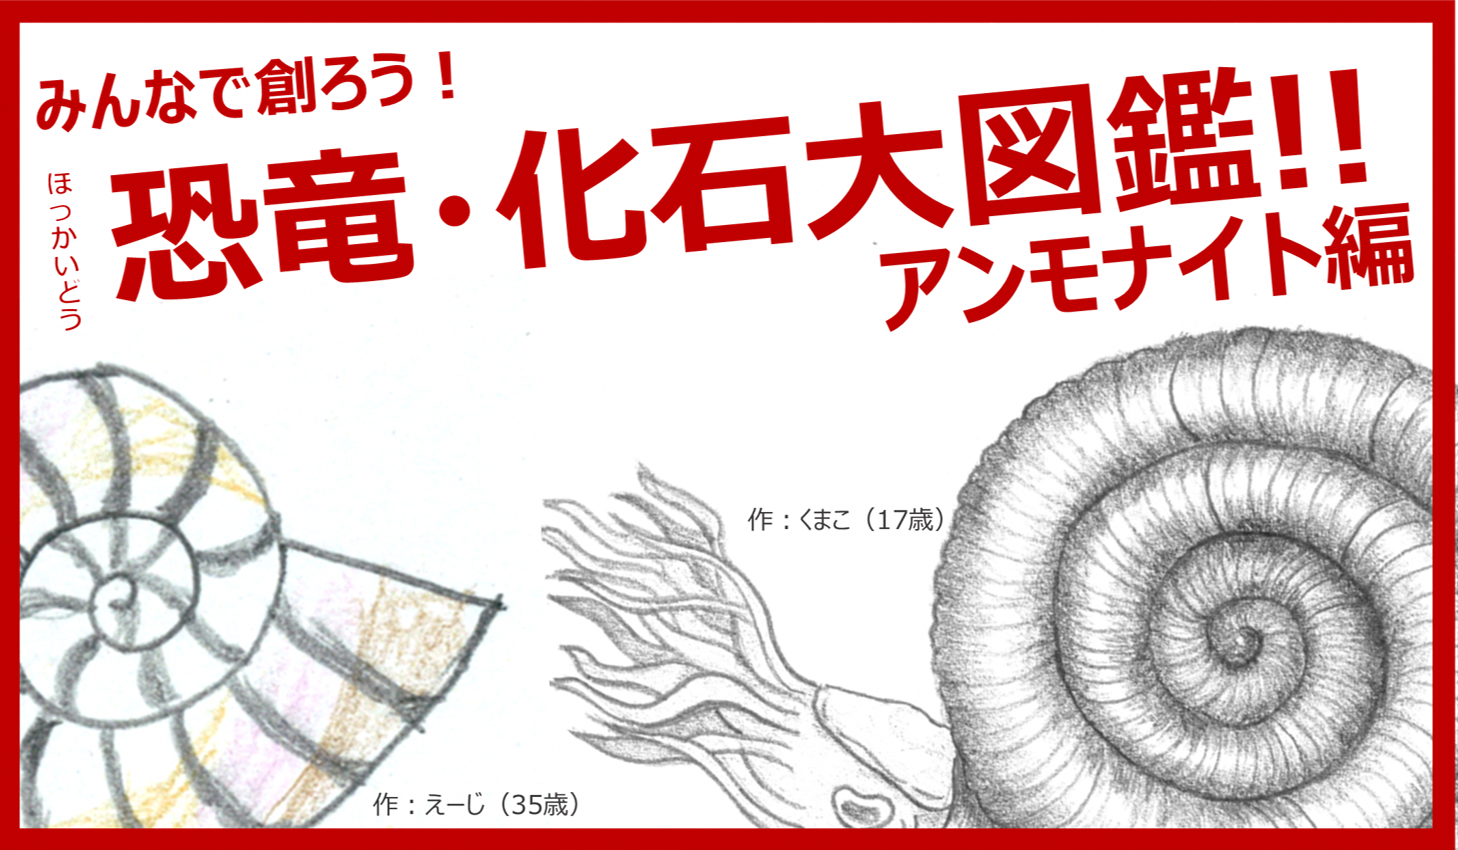 15155円 【送料込】 アンモナイト化石１㎏ 飾り台付き